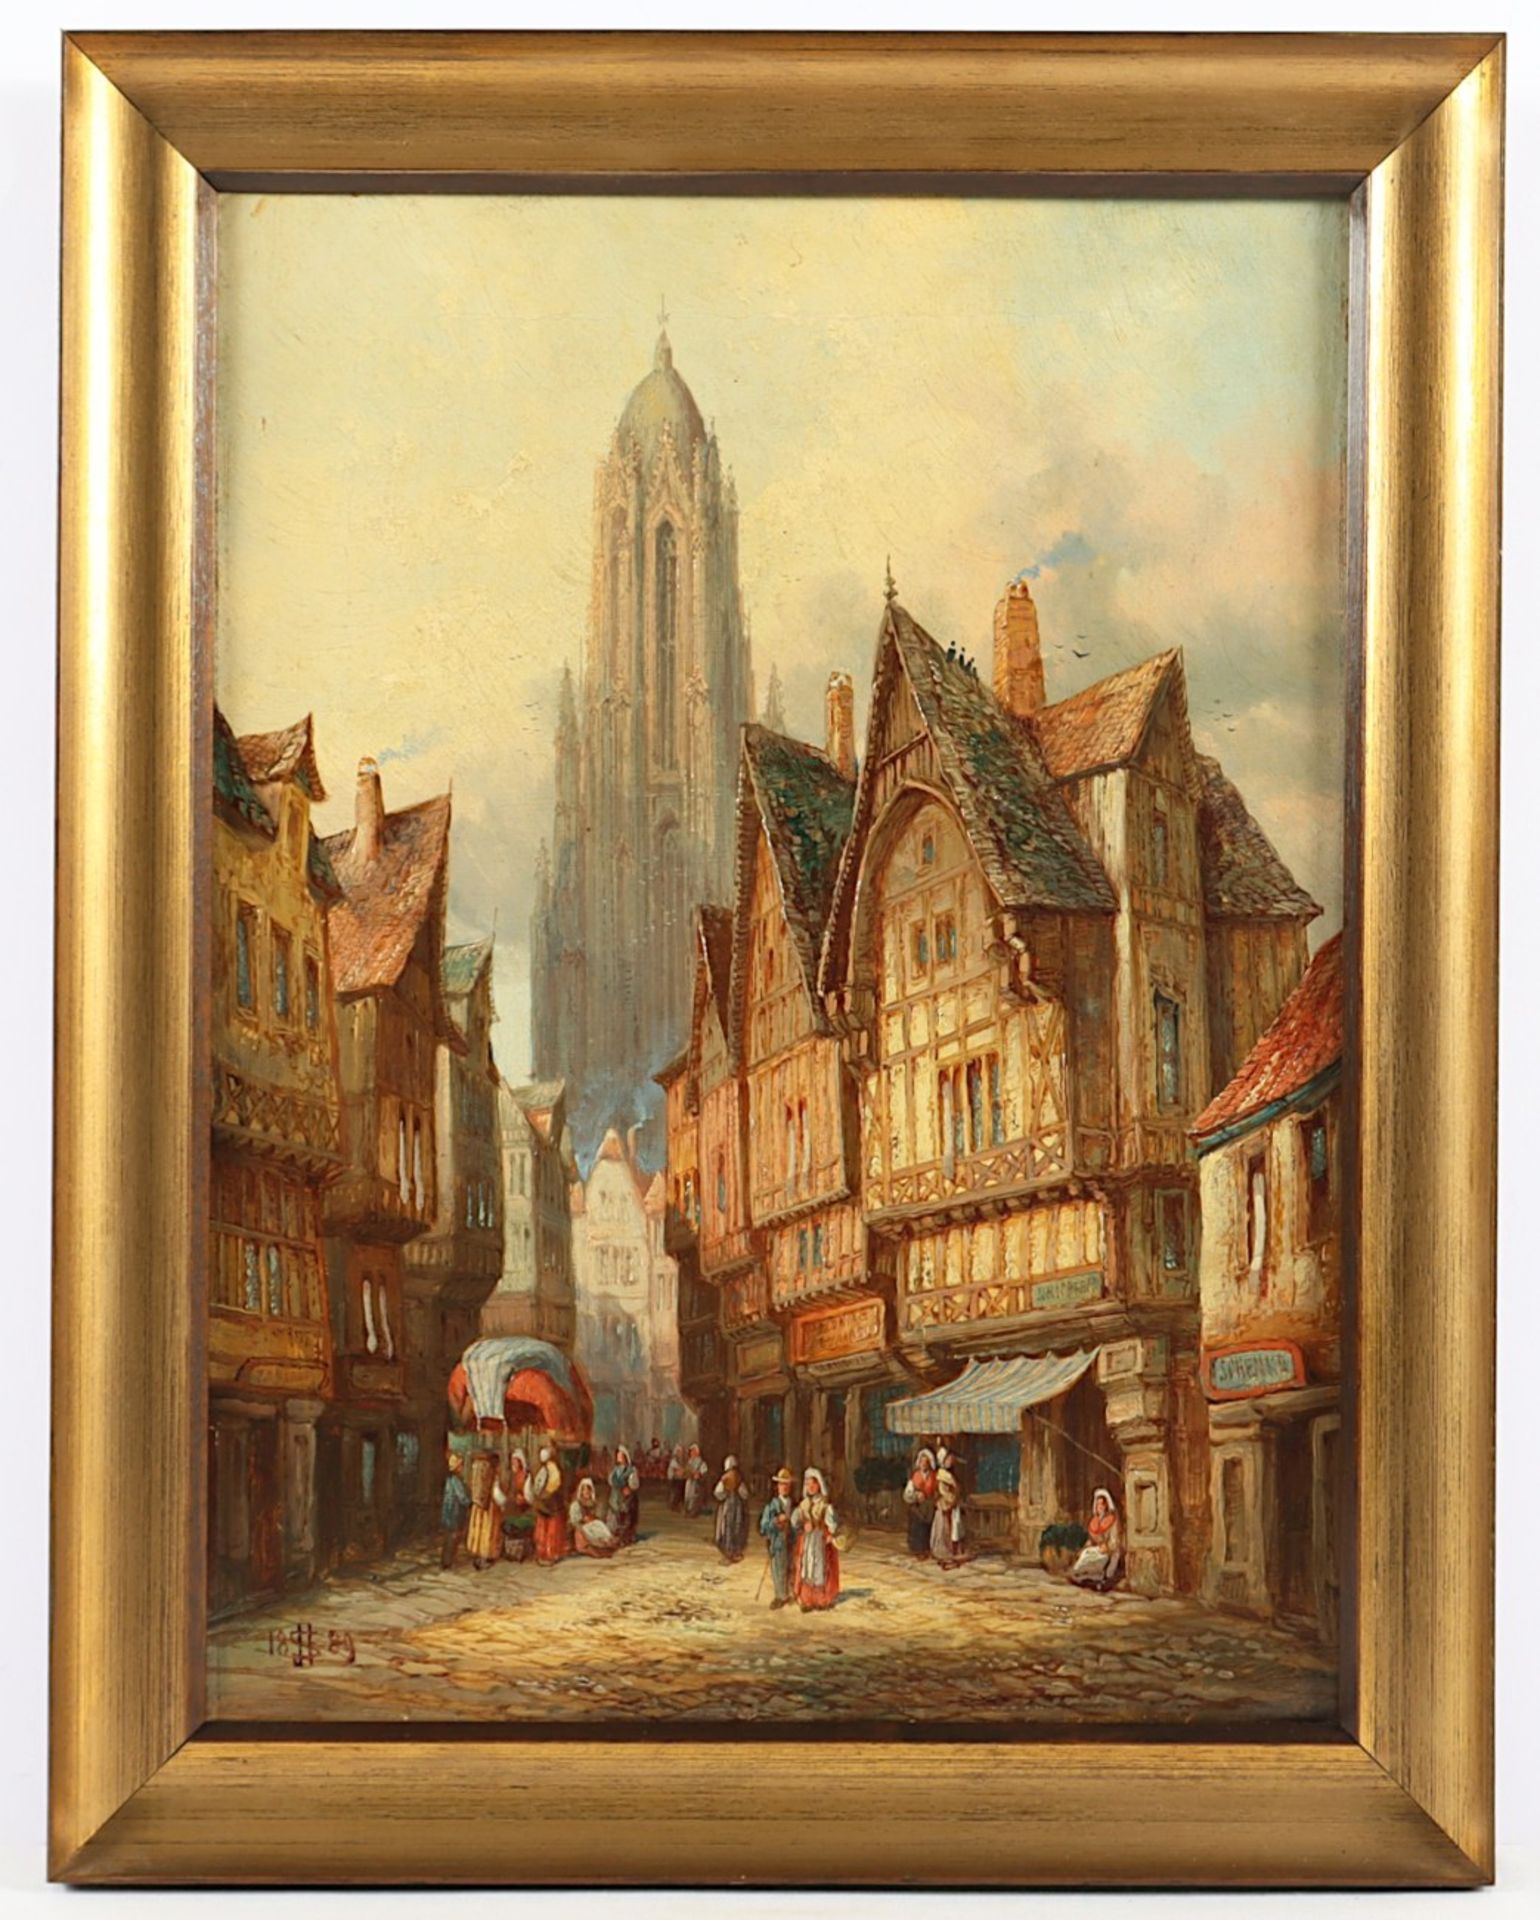 SCHÄFER, Henry Thomas (1833-1916), "Idealisierte Ansicht aus Alt Frankfurt", Öl/Lwd., 41 x 30,5, do